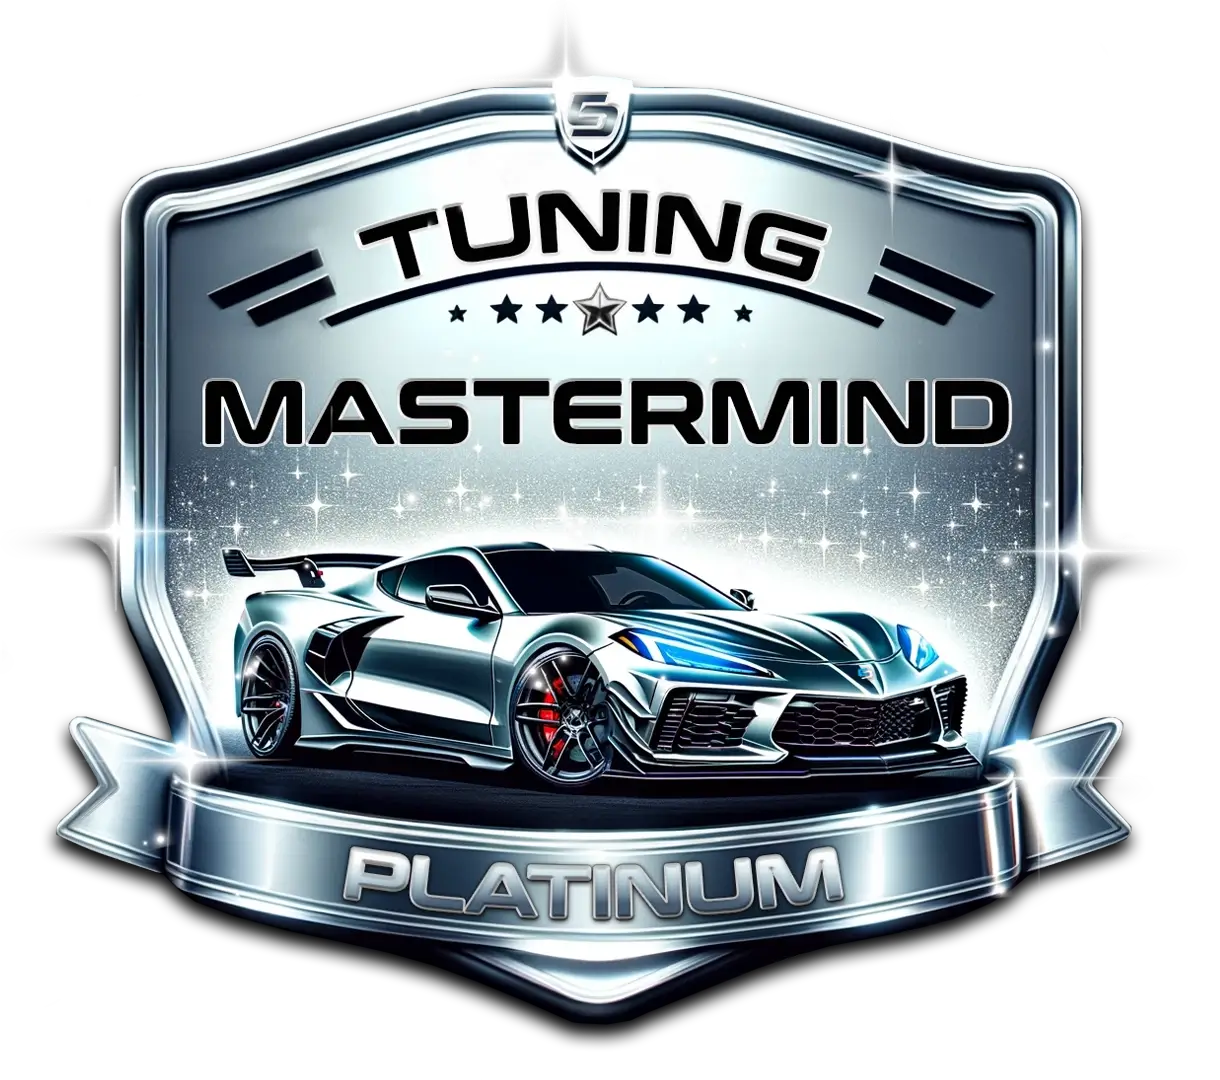 Tuner mastermind - platinum